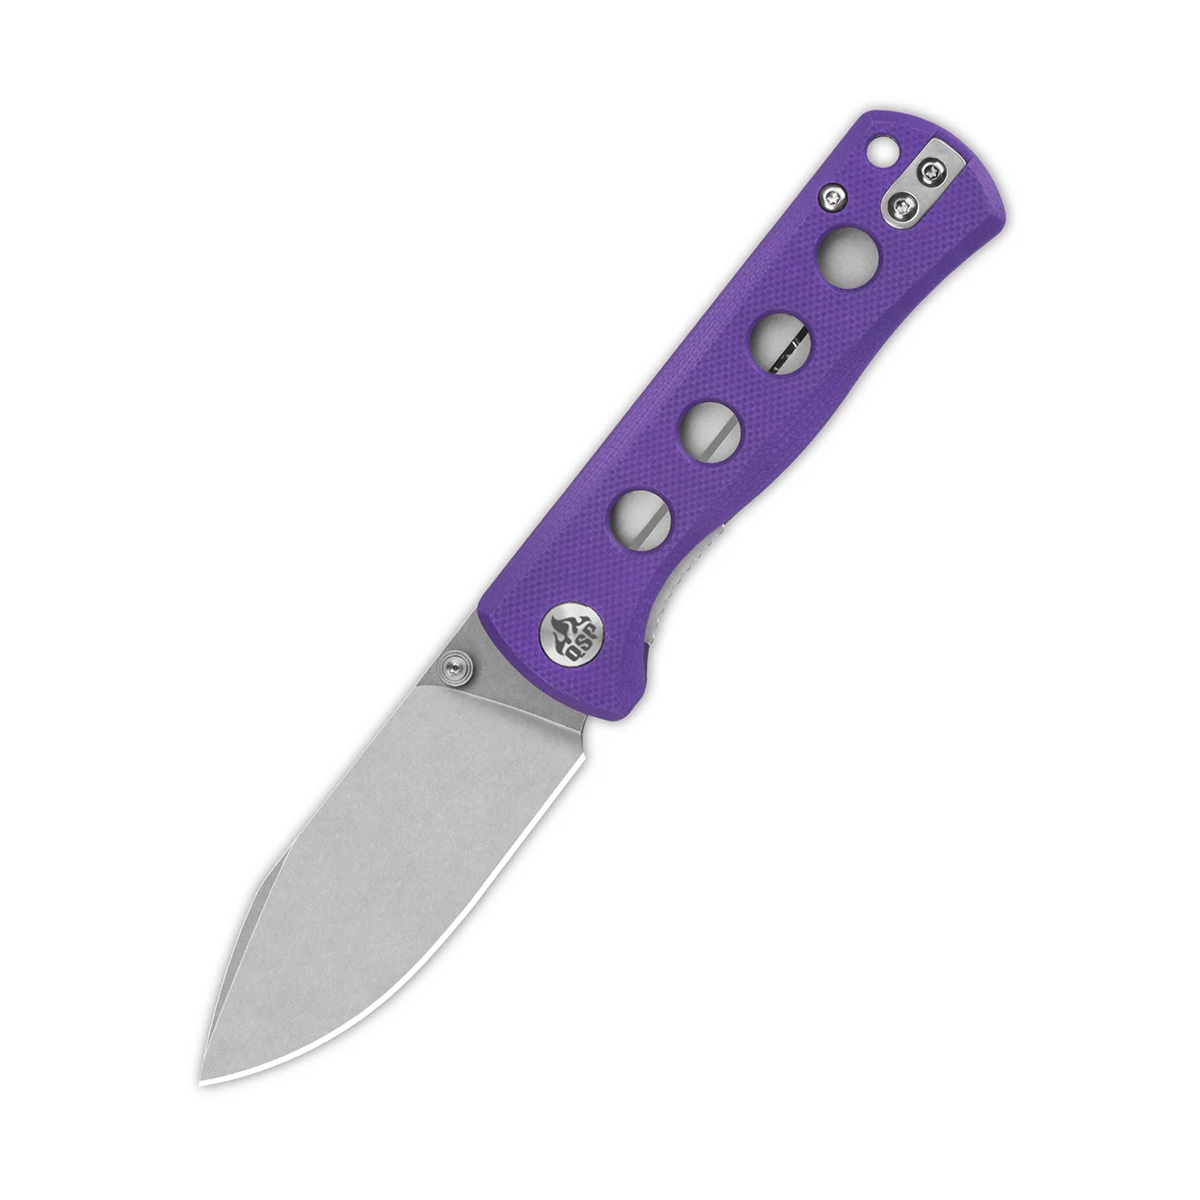 Складной нож QSP Canary Folder 7.2 см, сталь Sandvik 14C28N, рукоять G10, фиолетовый